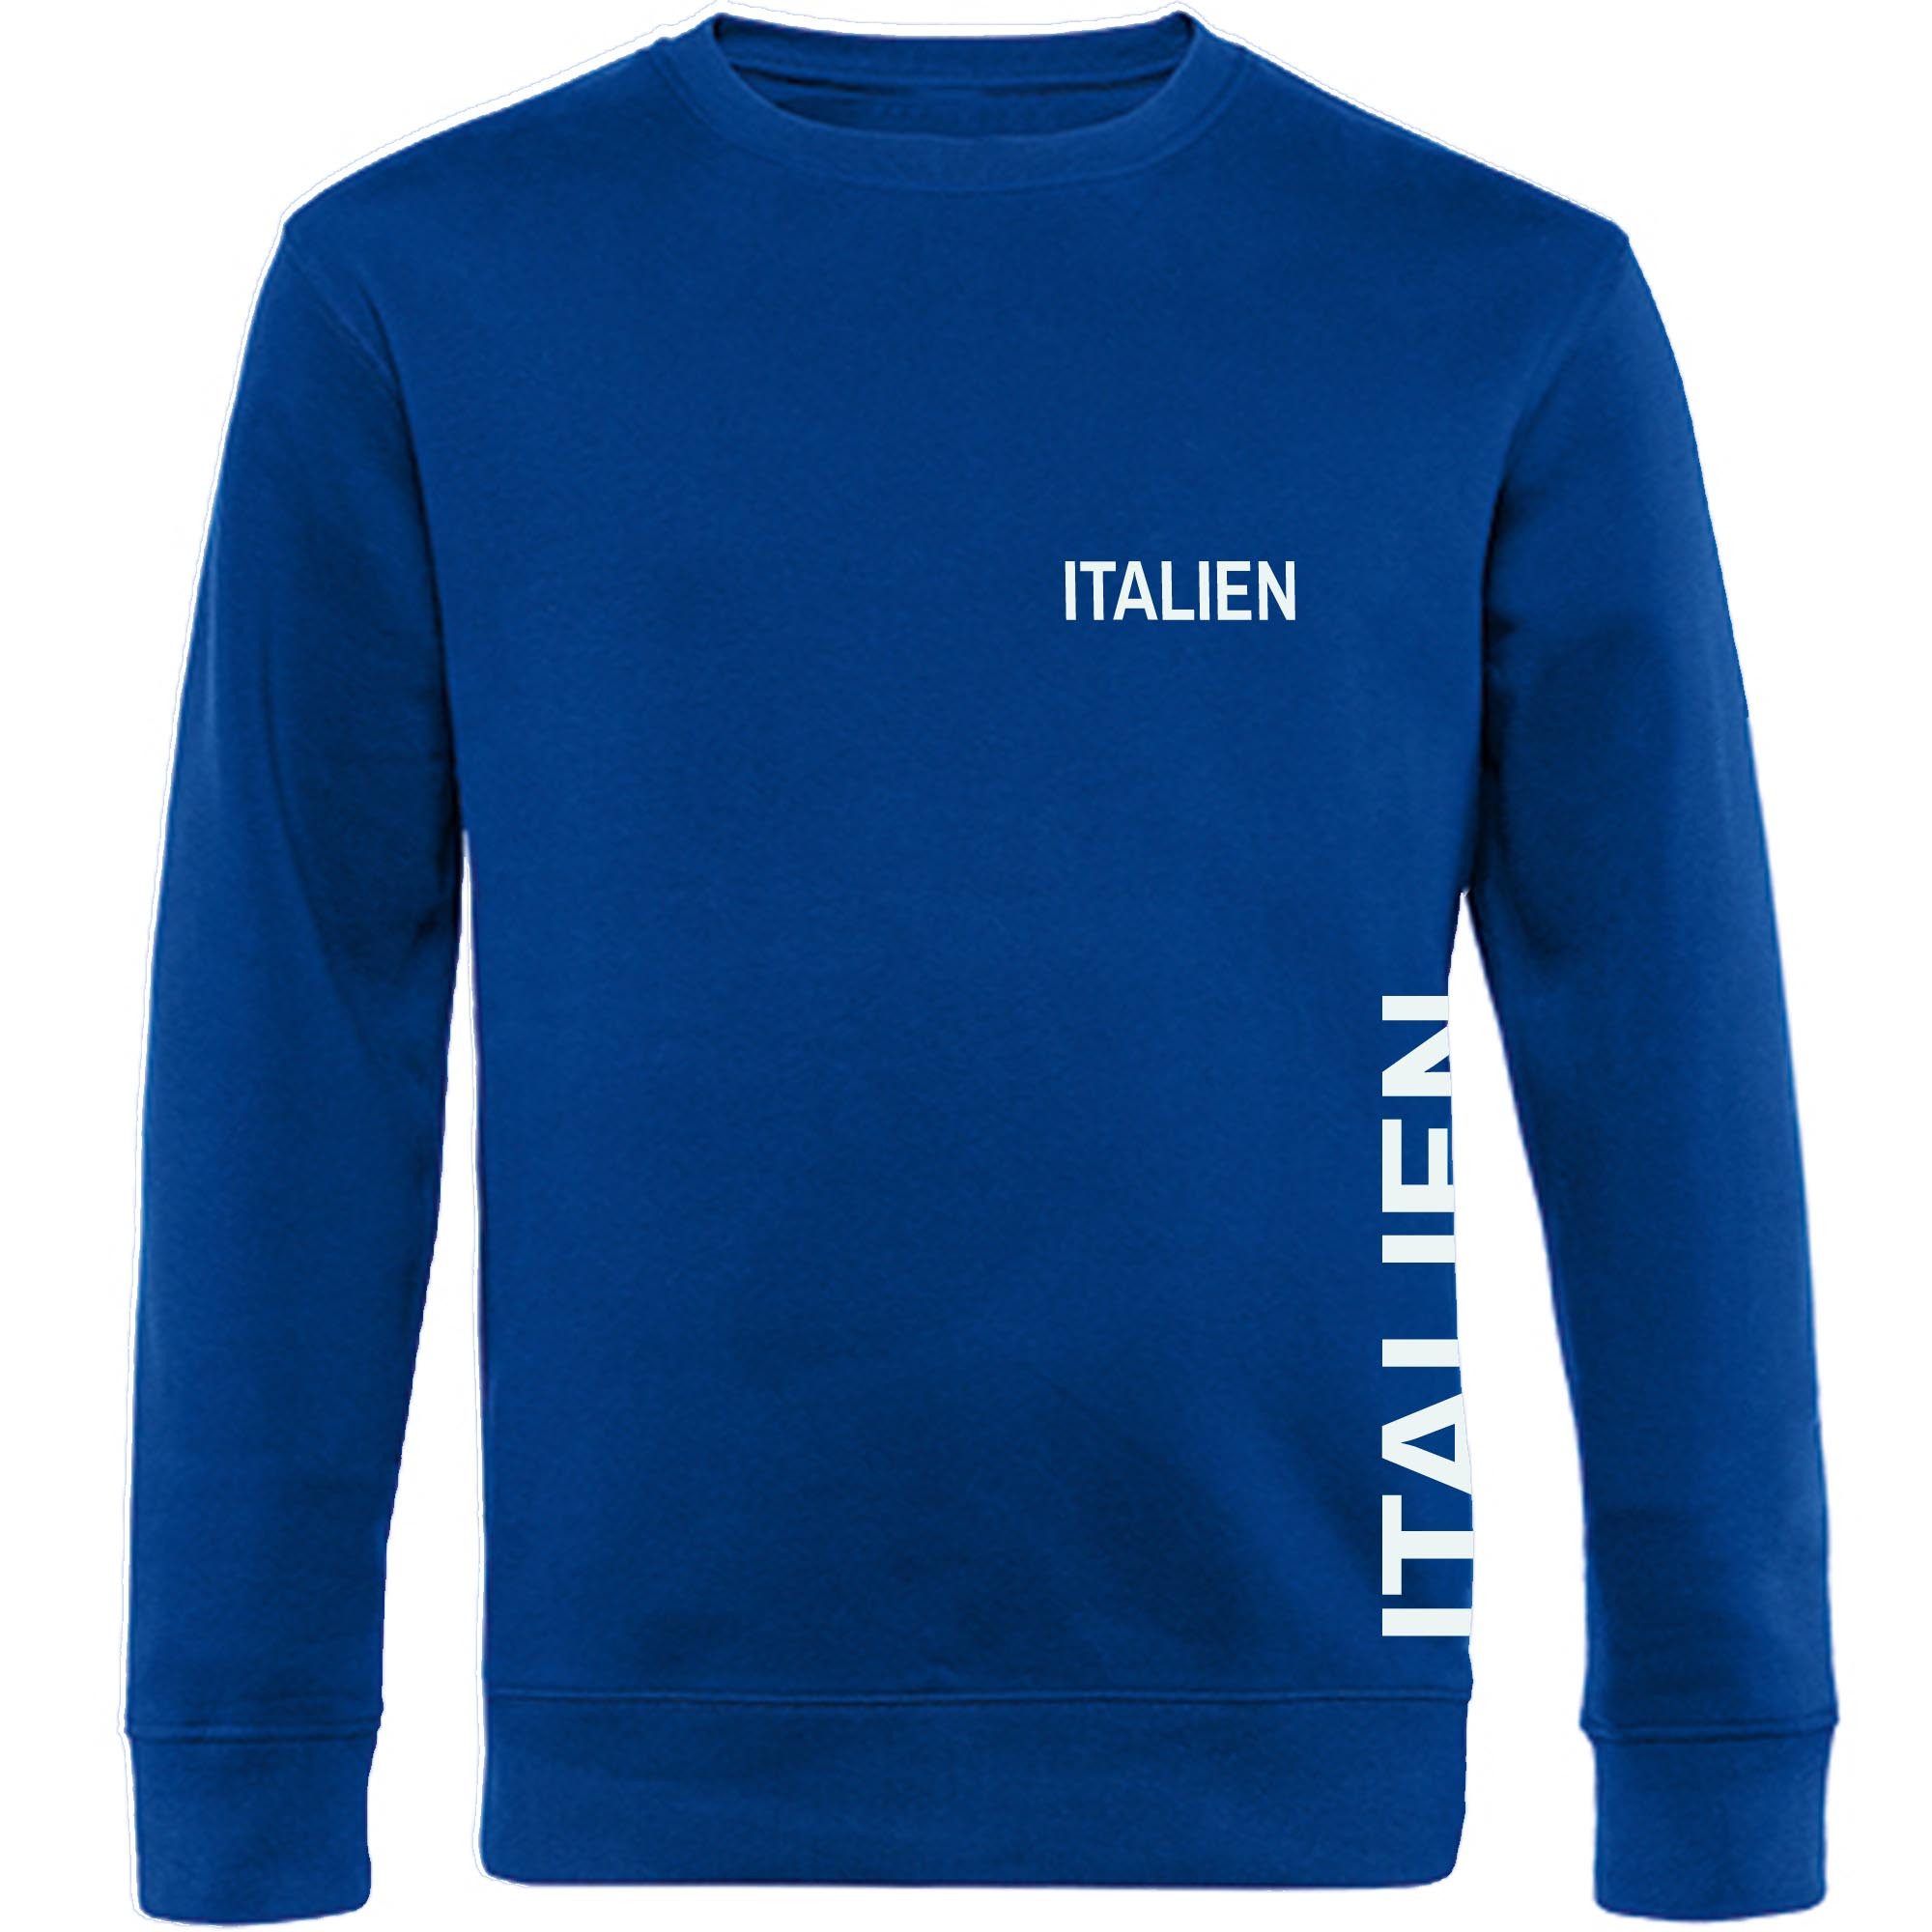 multifanshop Sweatshirt Italien - Brust & Seite - Pullover